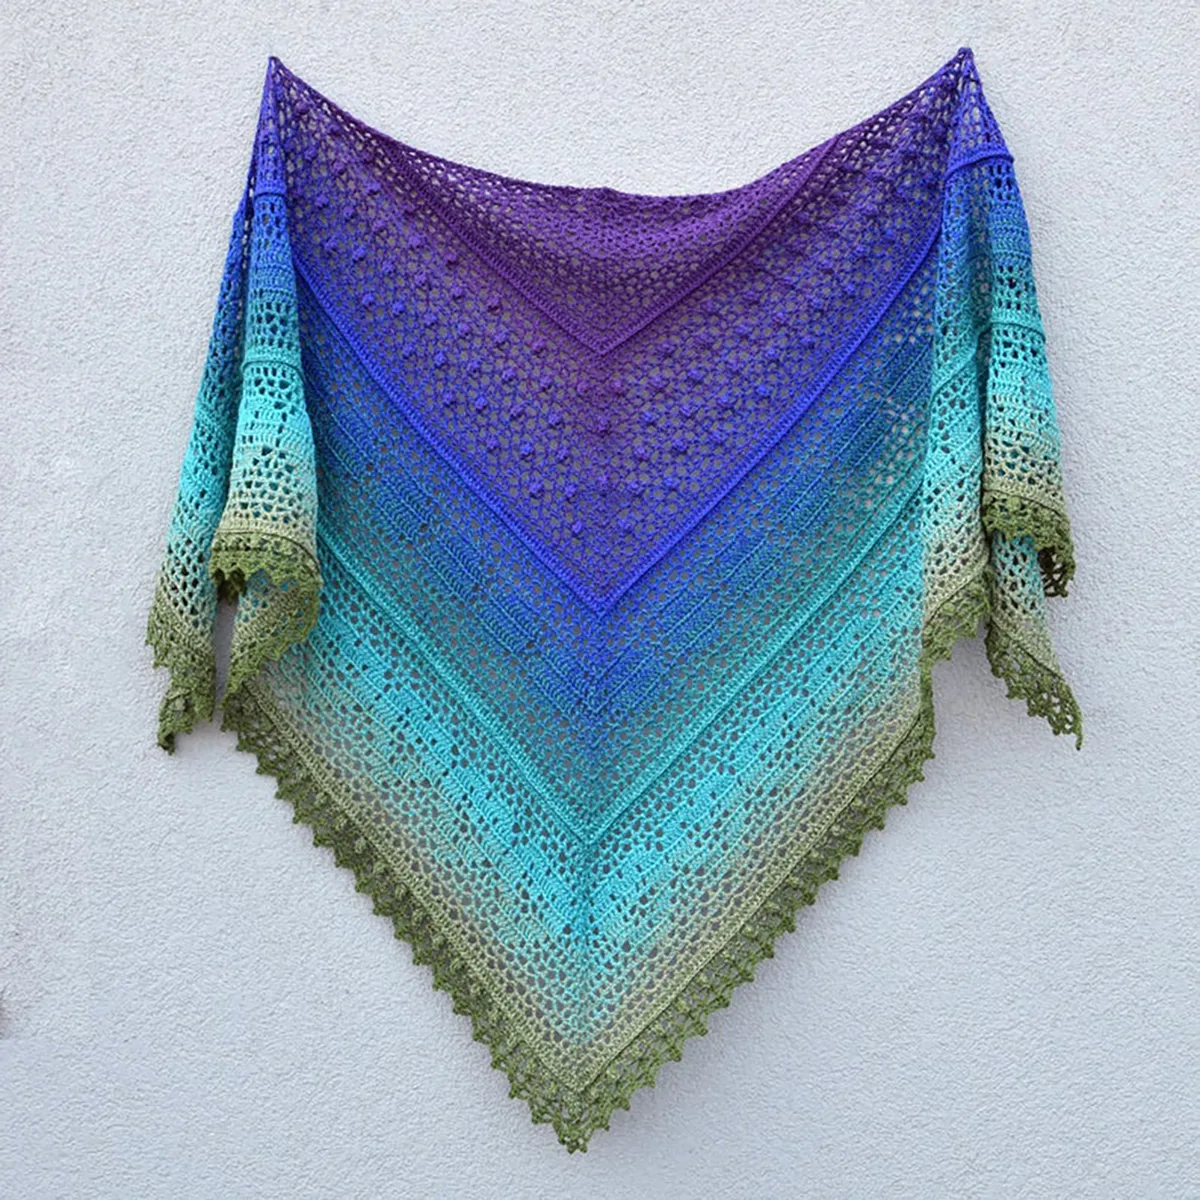 grinda_lace_shawl_crochet_pattern